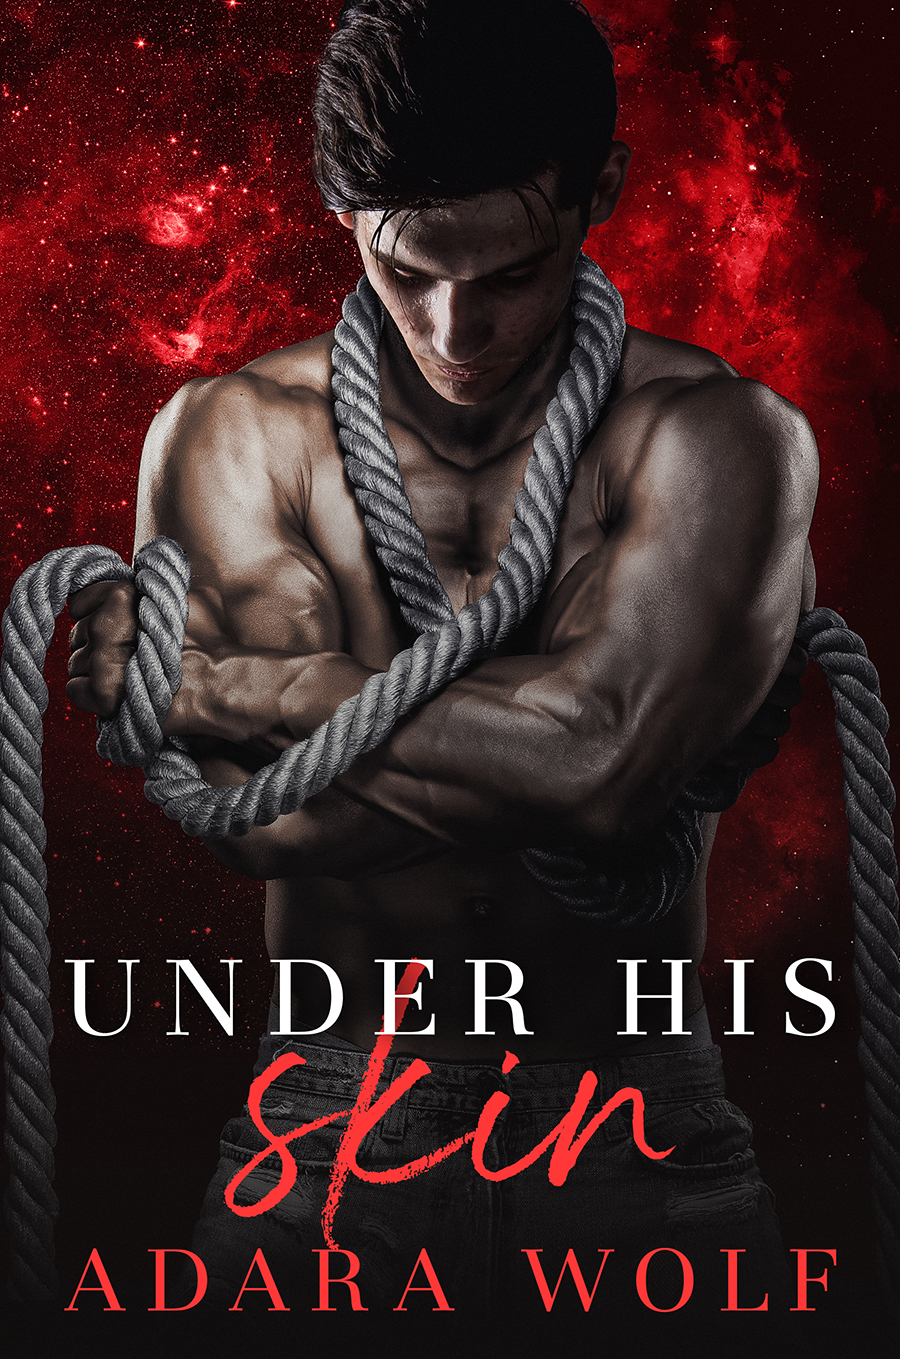 Under His Skin (Under His Heel - Adara Wolf